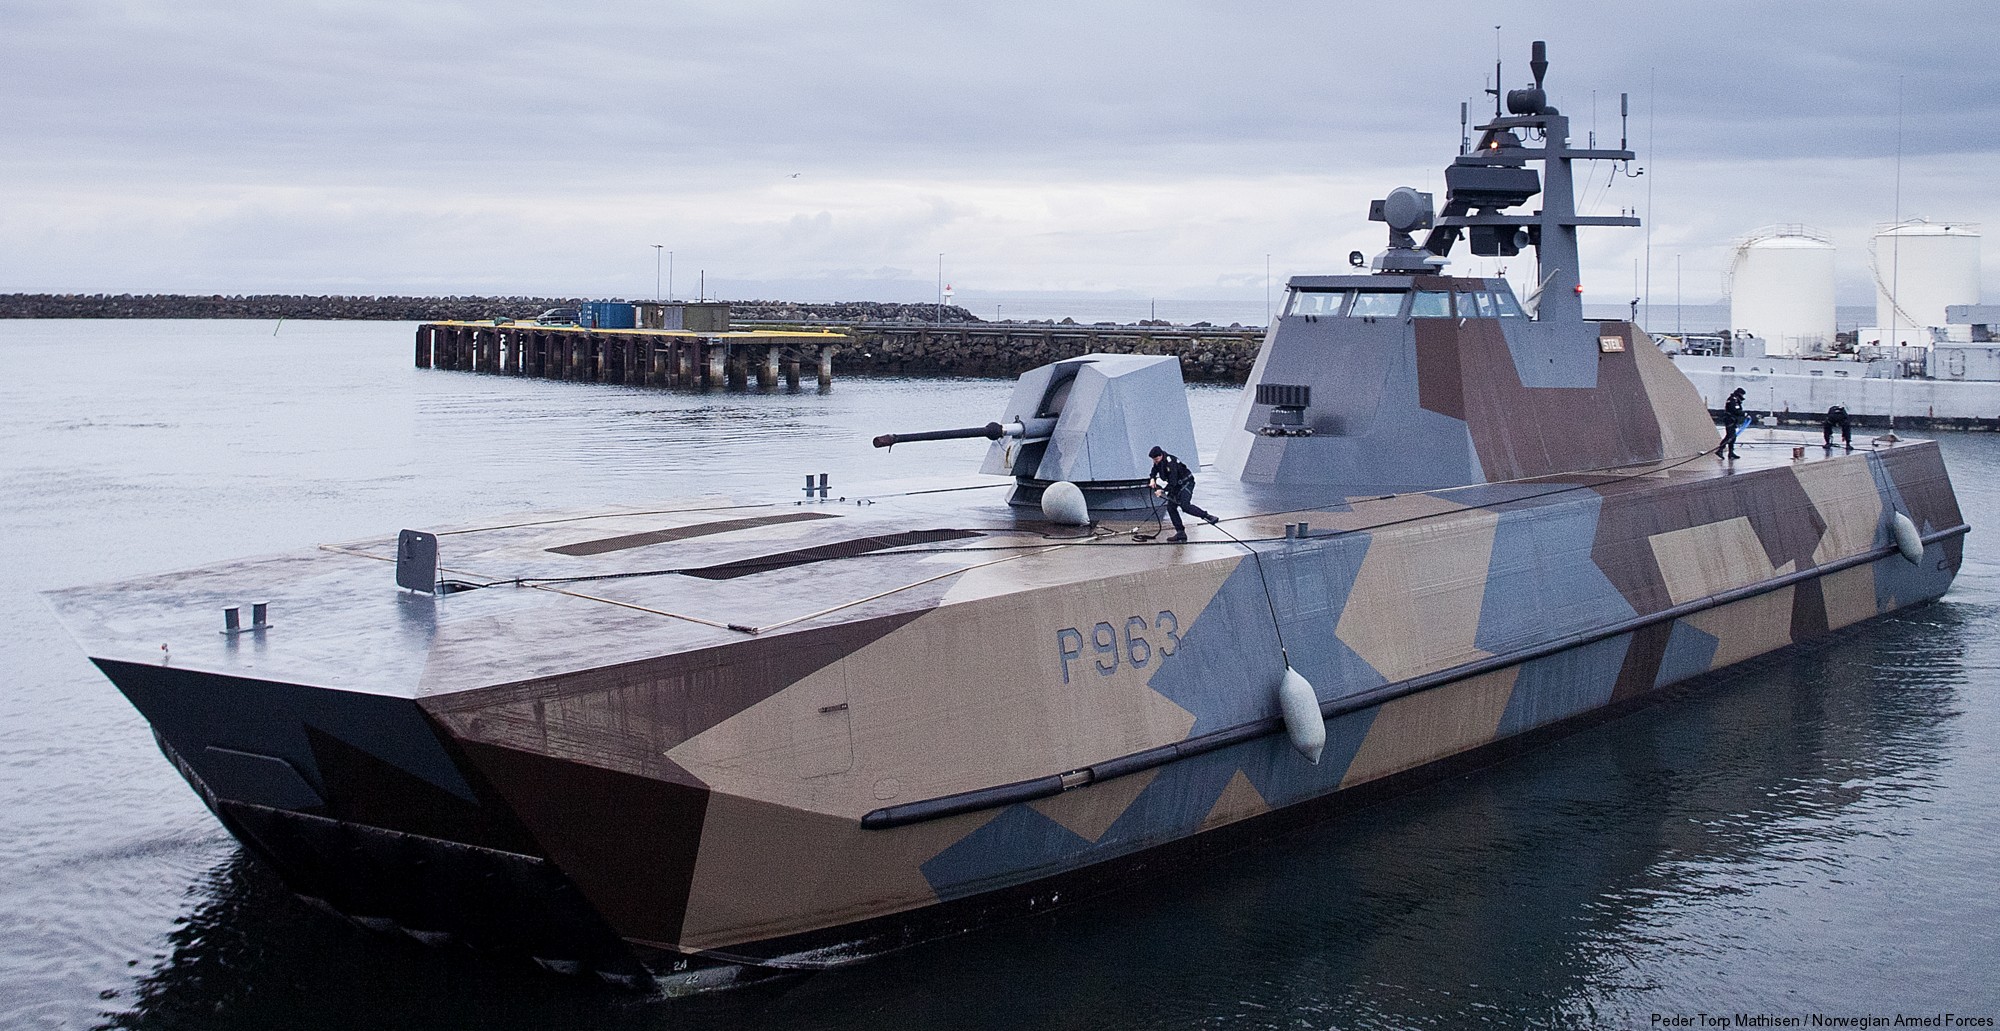 p-963 steil knm hnoms skjold class corvette royal norwegian navy sjoforsvaret 05